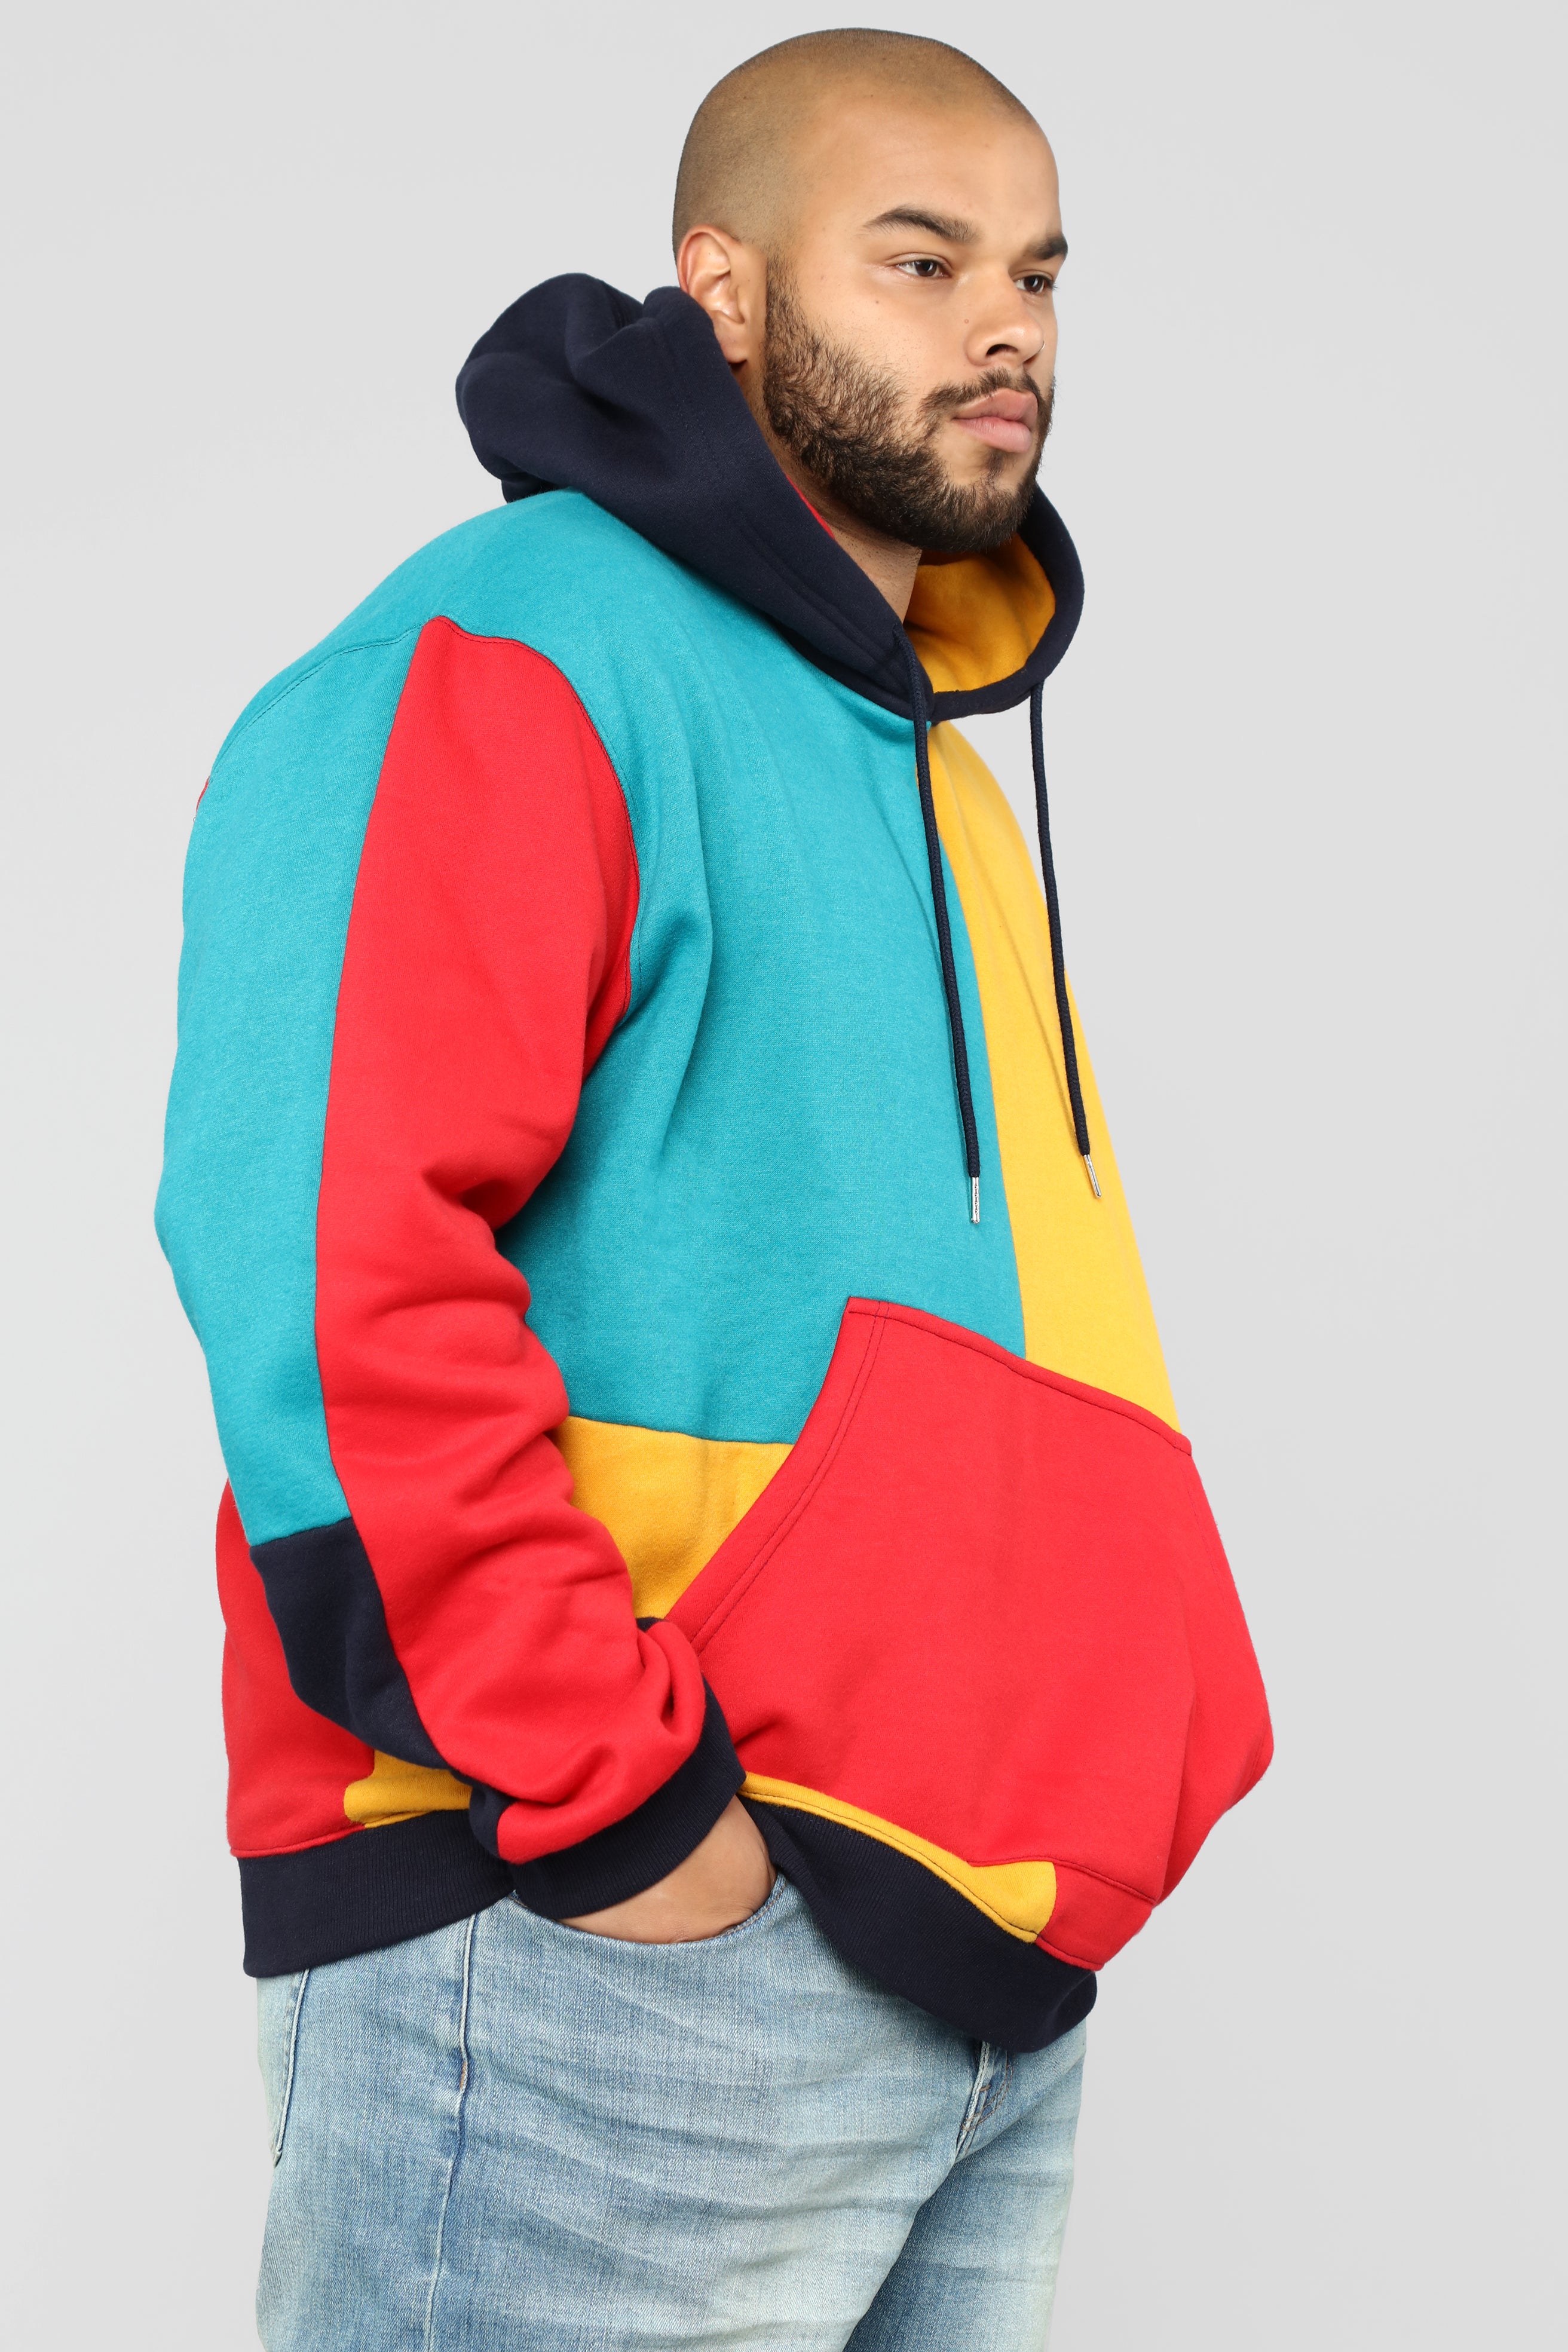 80s hoodie style